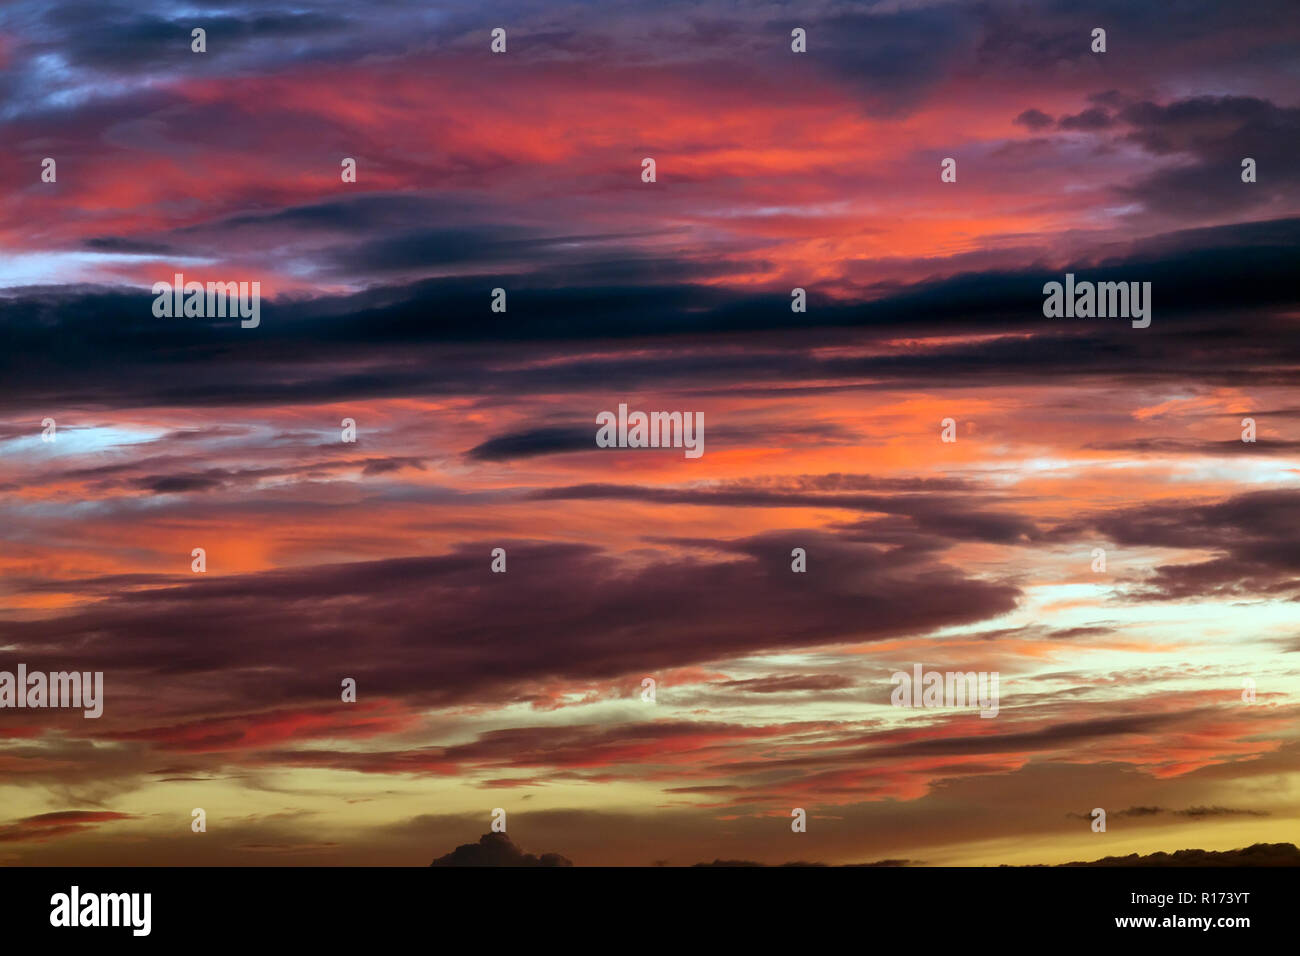 New Scenic 5 posti sullo sfondo di un bellissimo con Vivide sfumature di rosso e viola il tramonto su un Poco nuvoloso Nuvoloso sera Foto Stock